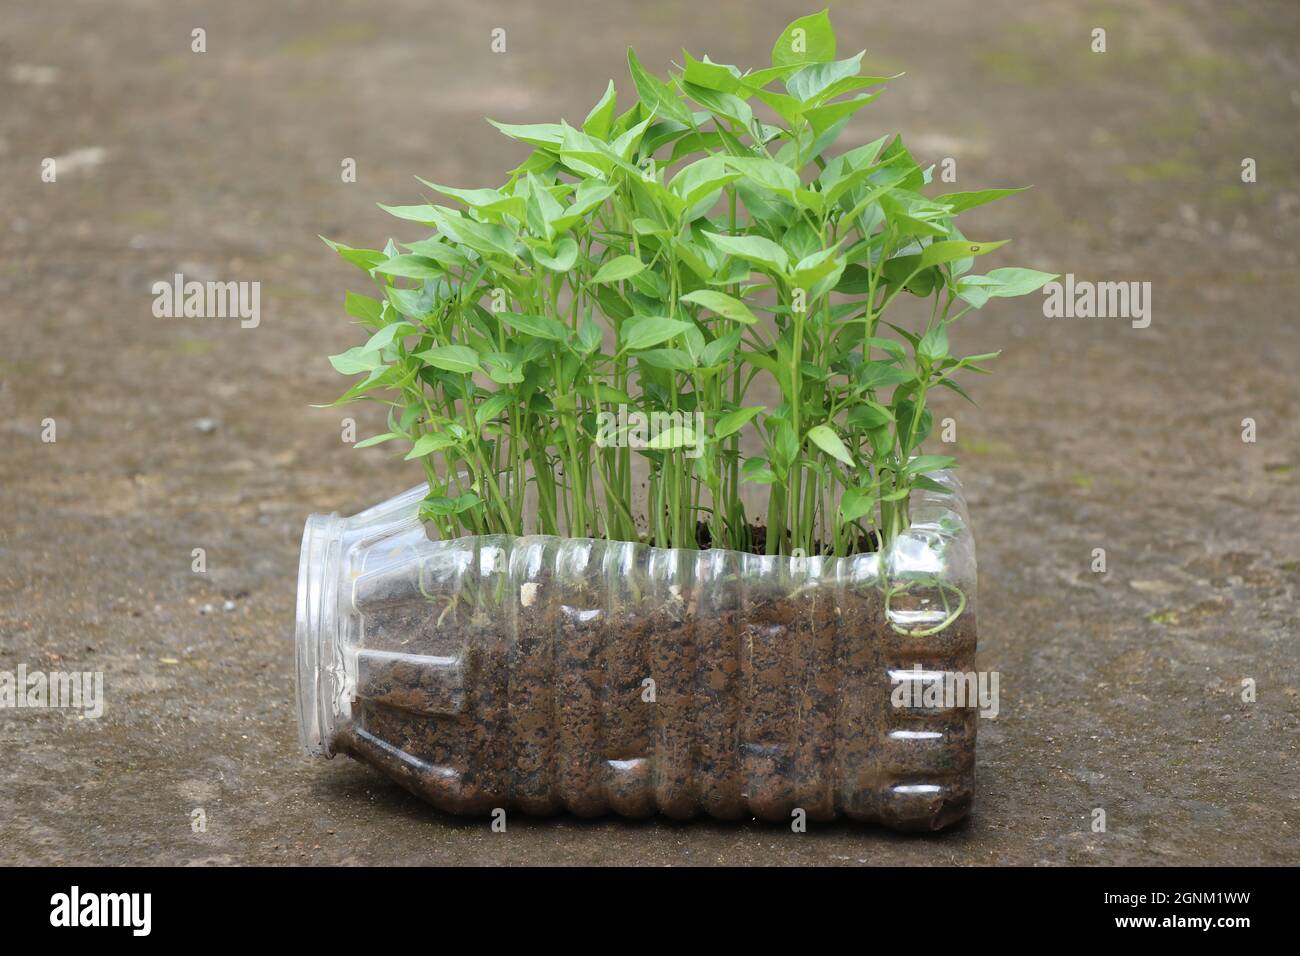 Plants de piment cultivés sur un contenant de déchets en plastique, petites plantes de piment prêtes à être plantées sur le sol Banque D'Images